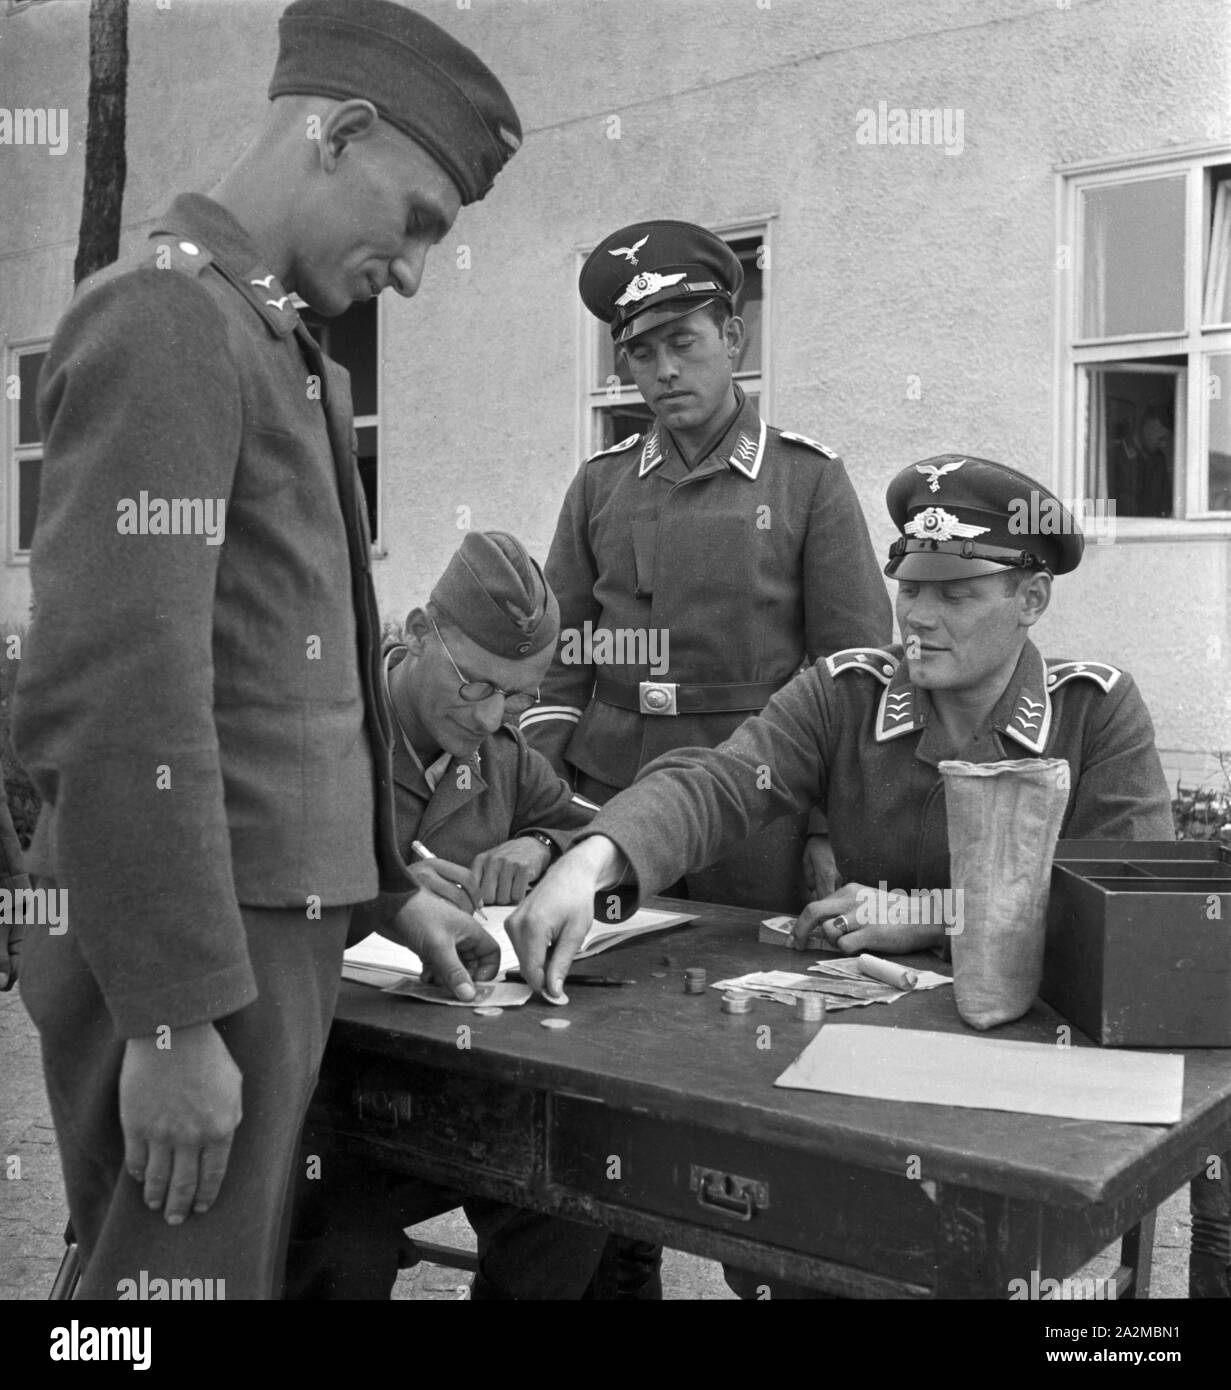 Original-Bildunterschrift: Das 'Geld holen' ist auch für den Soldaten immer eine angenehme Sache, Deutschland 1940er Jahre. Getting money is something fine for soldiers, Germany 1940s. Stock Photo